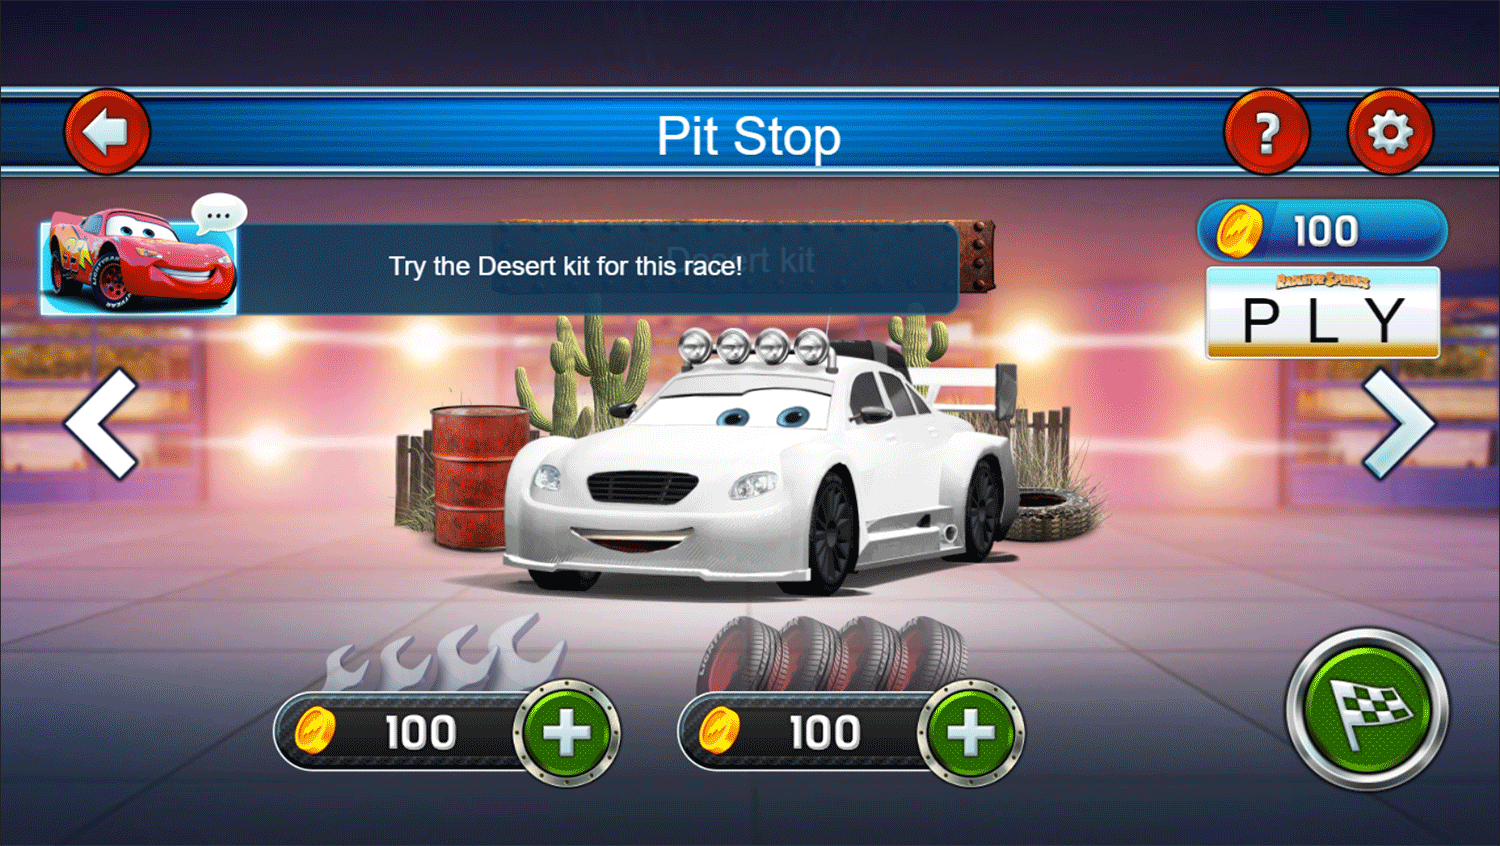 Cars Lightning Speed Game Pit Stop Screenshot.